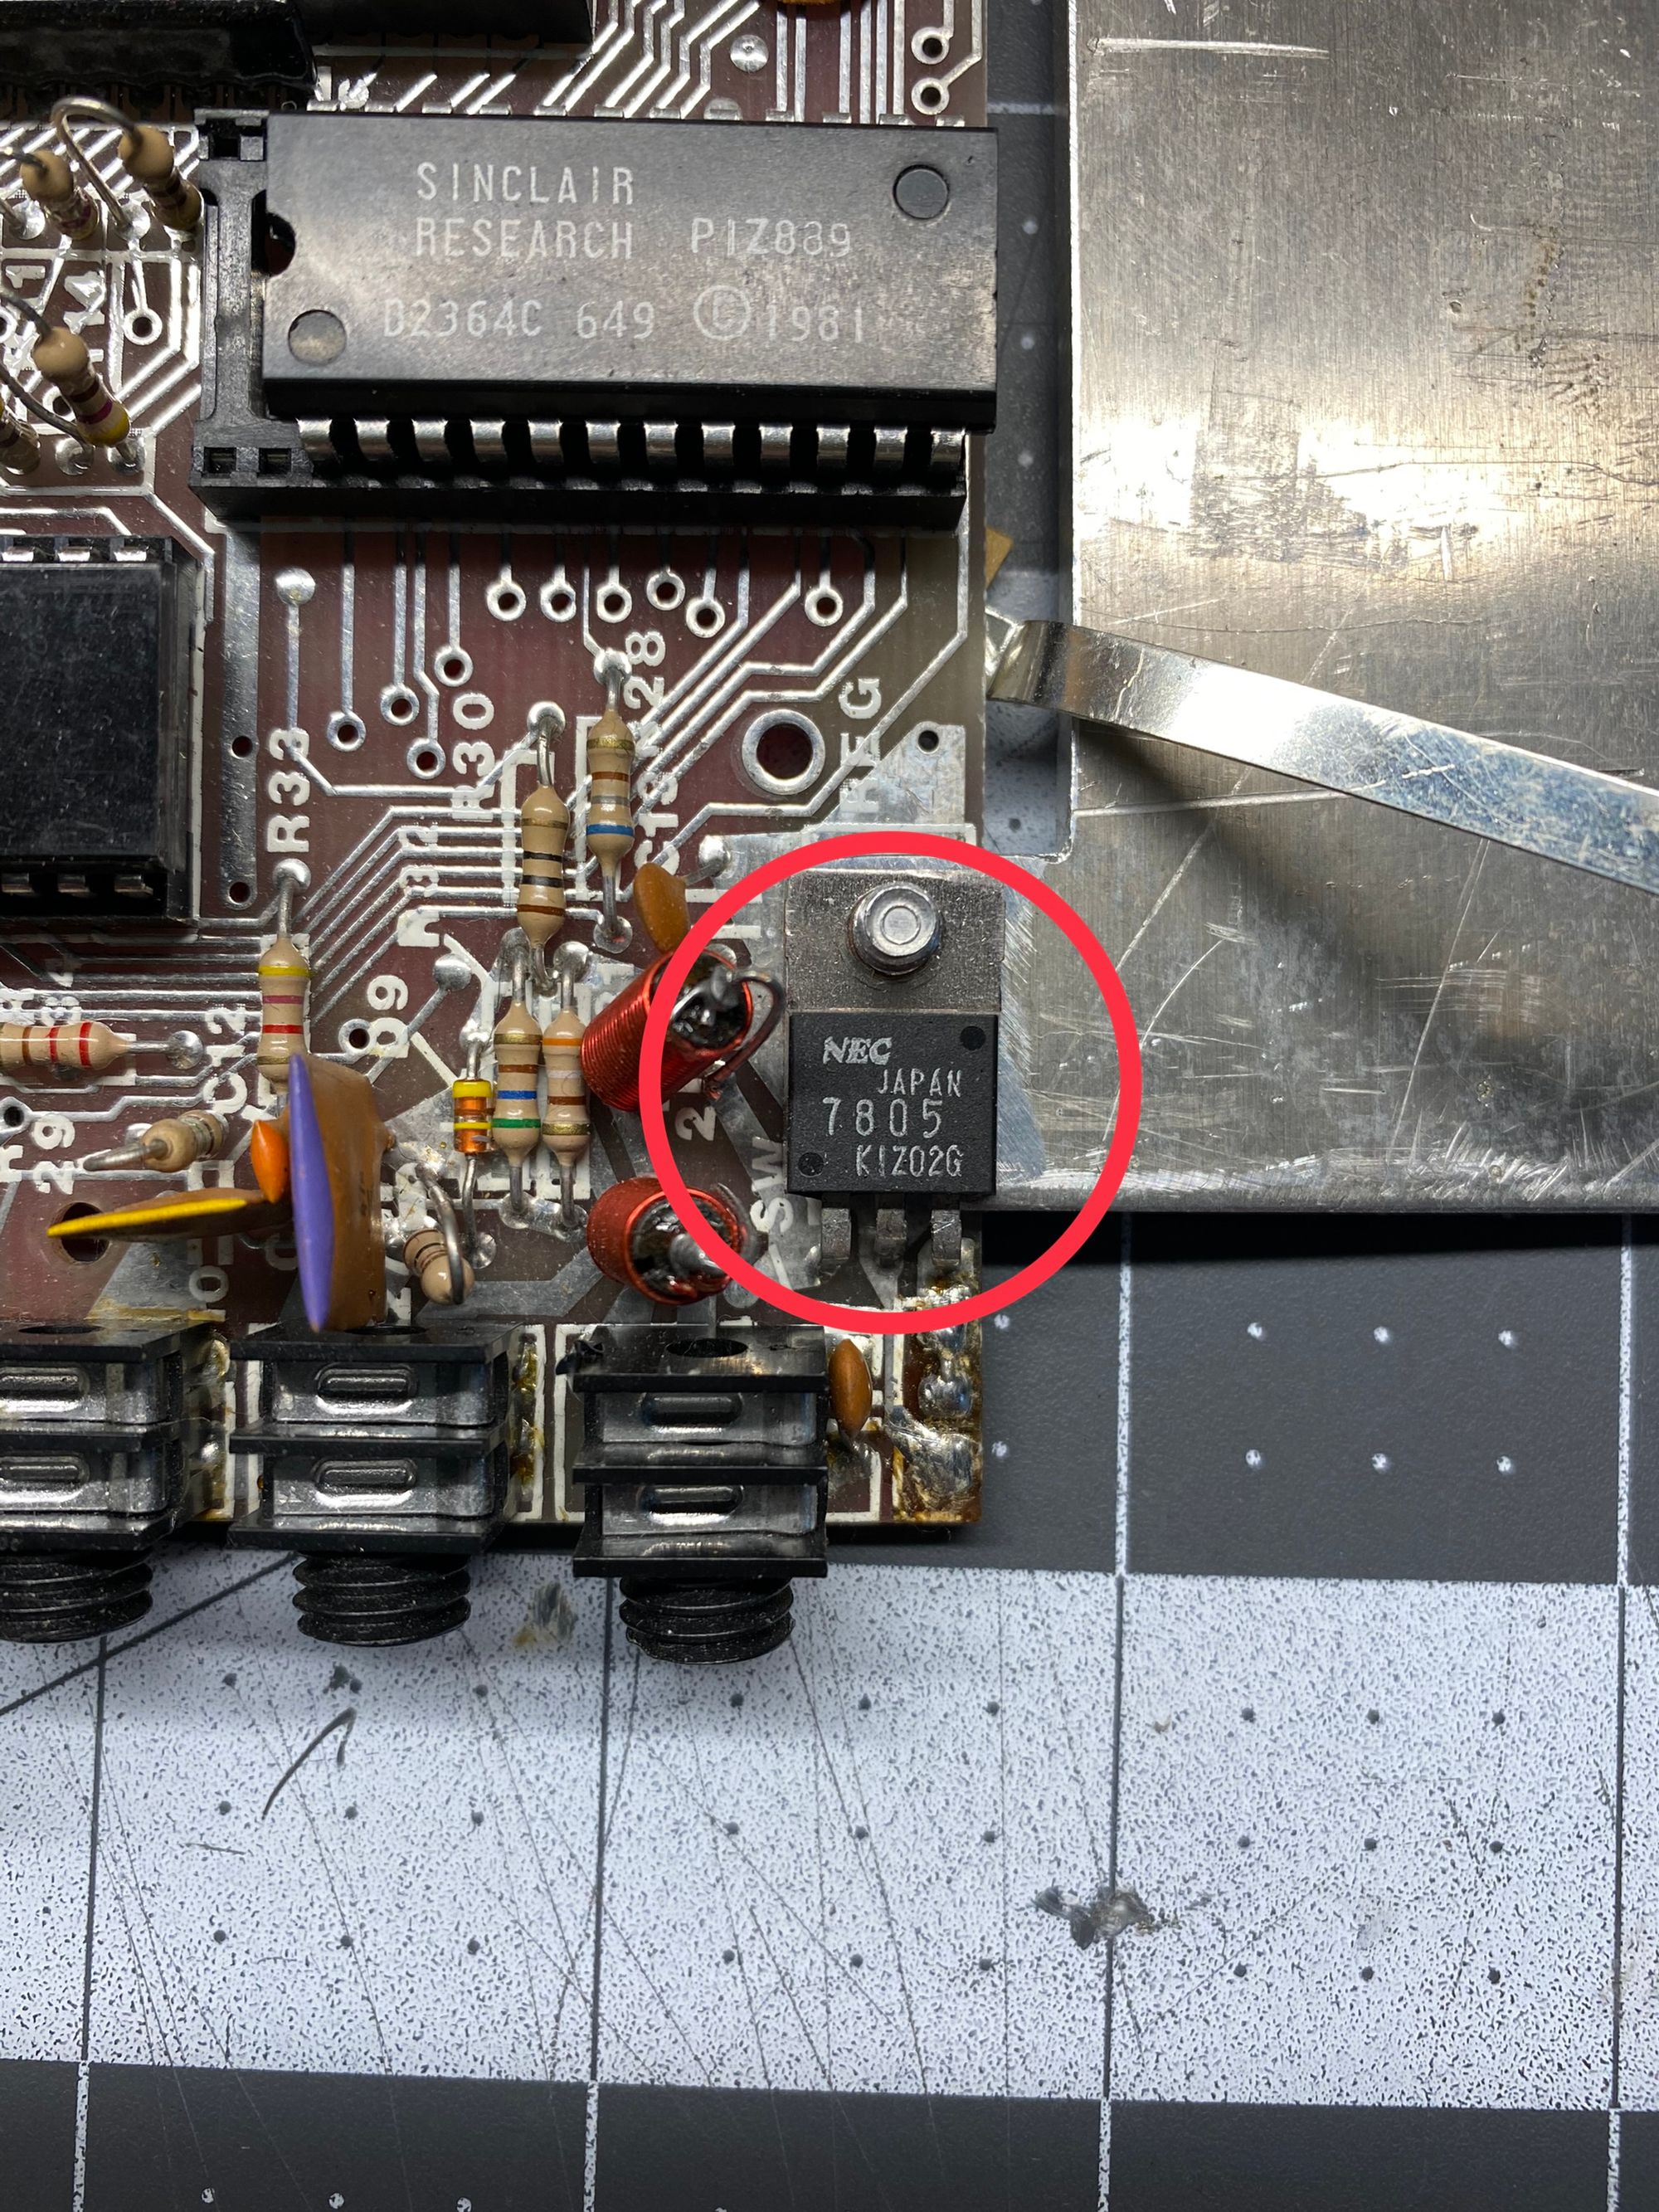 ZX81/TIMEX-SINCLAIR 1000 Composite Video Mod Part 2 - Plus Troubleshooting